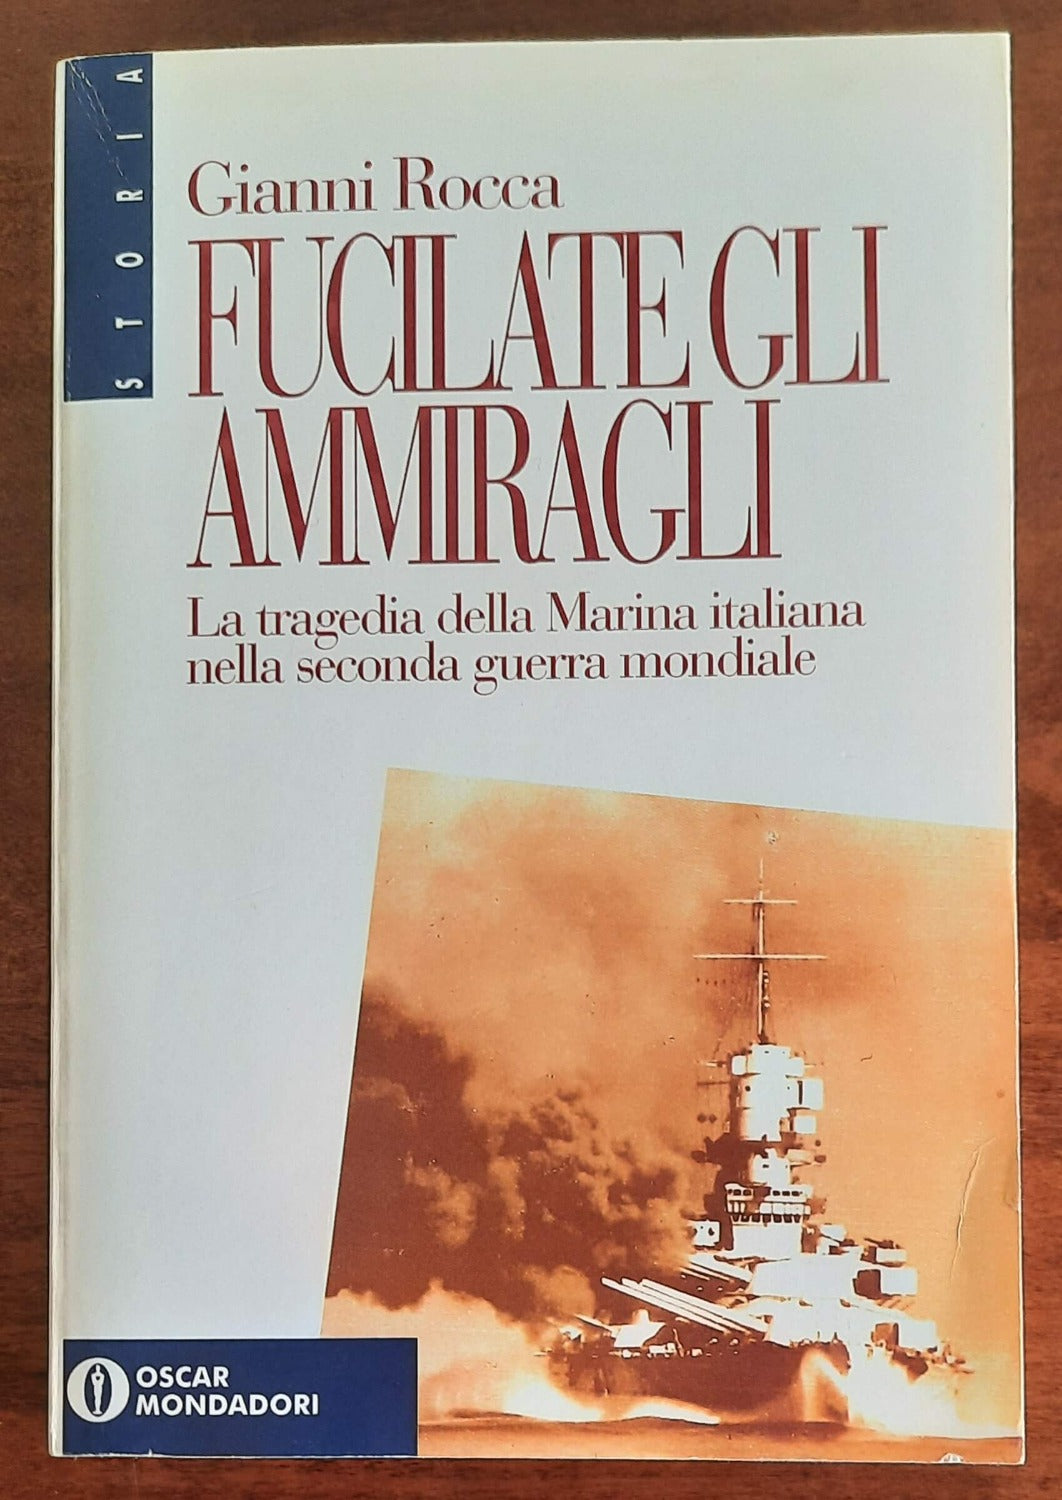 Fucilate gli ammiragli. La tragedia della Marina italiana nella seconda guerra mondiale